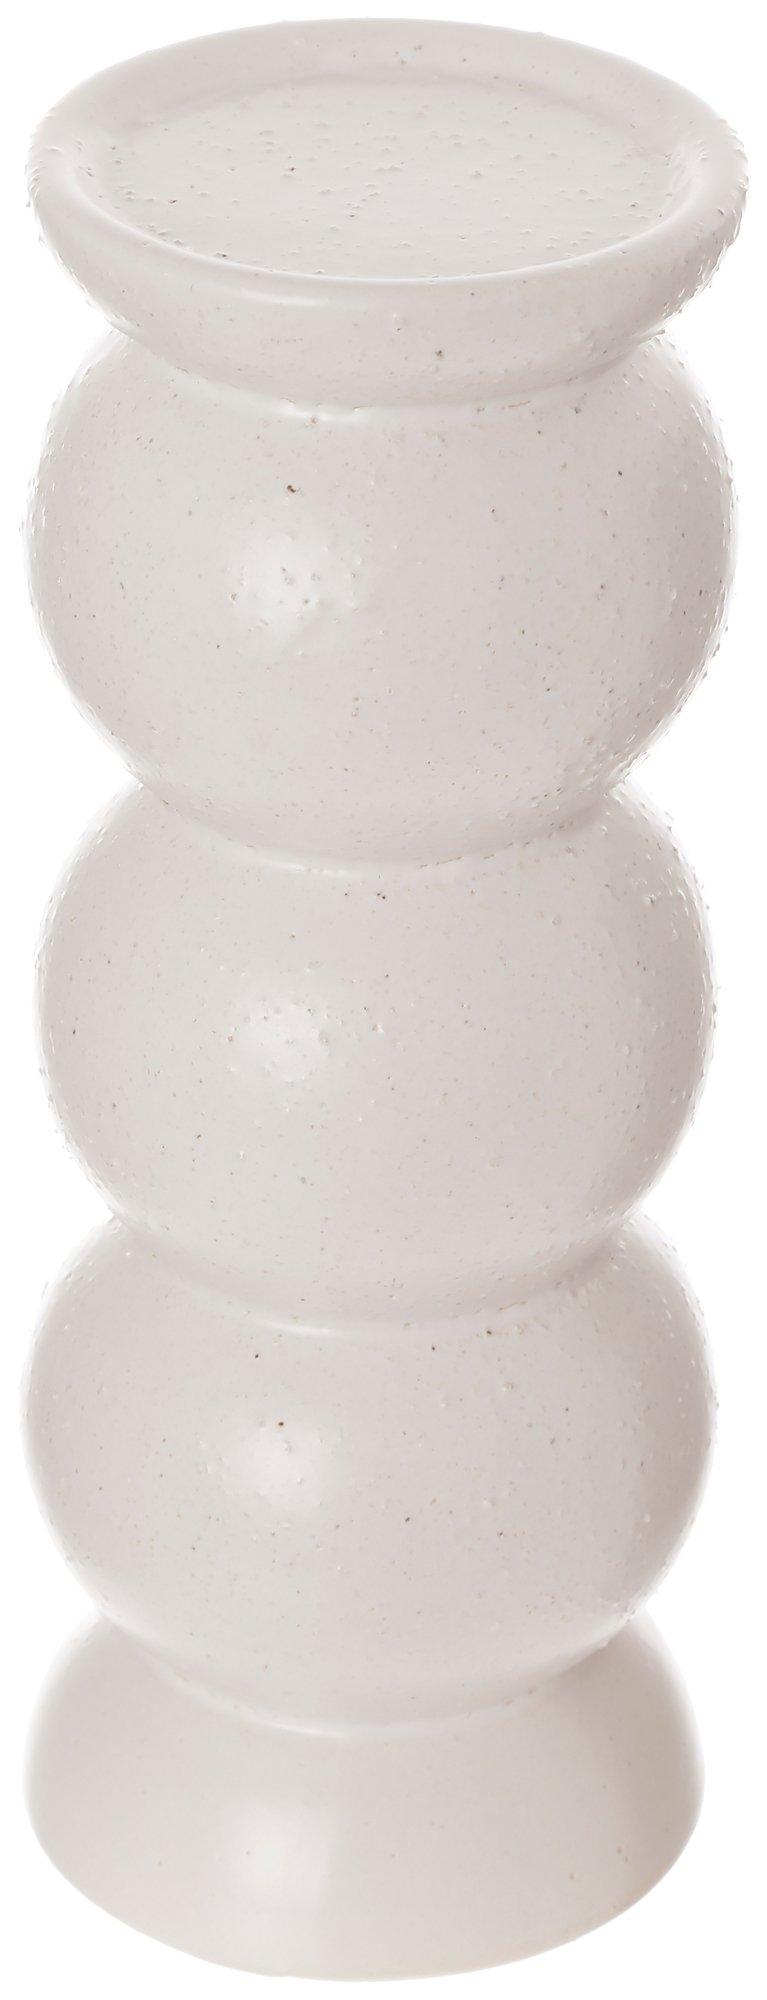 10 in. Ceramic 3 Ball Candleholder